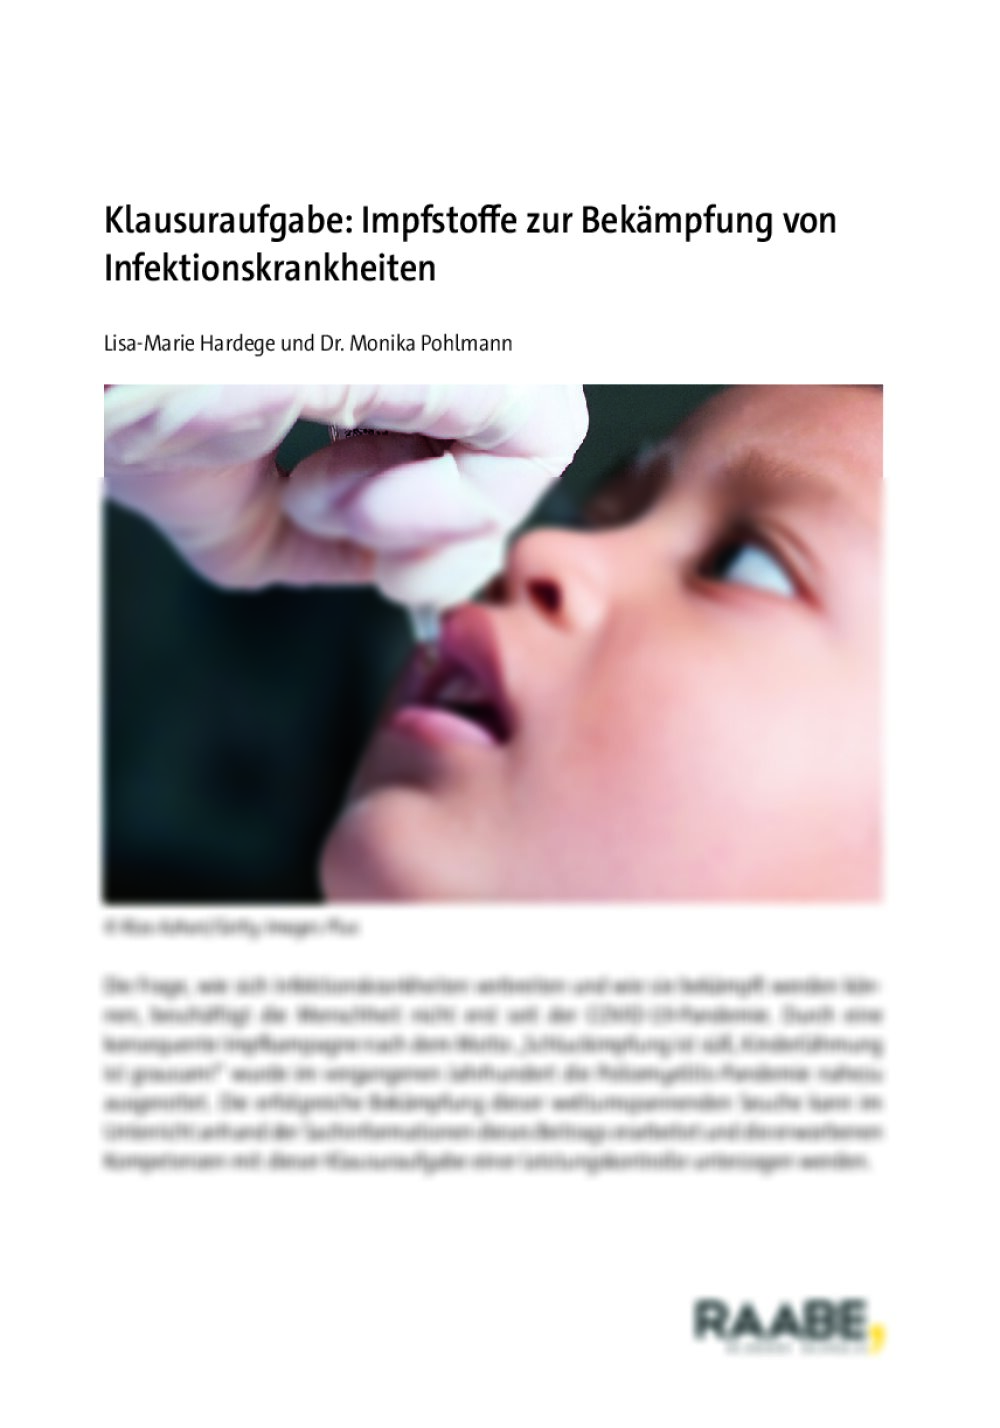 Klausuraufgabe: Impfstoffe zur Bekämpfung von Infektionskrankheiten - Seite 1